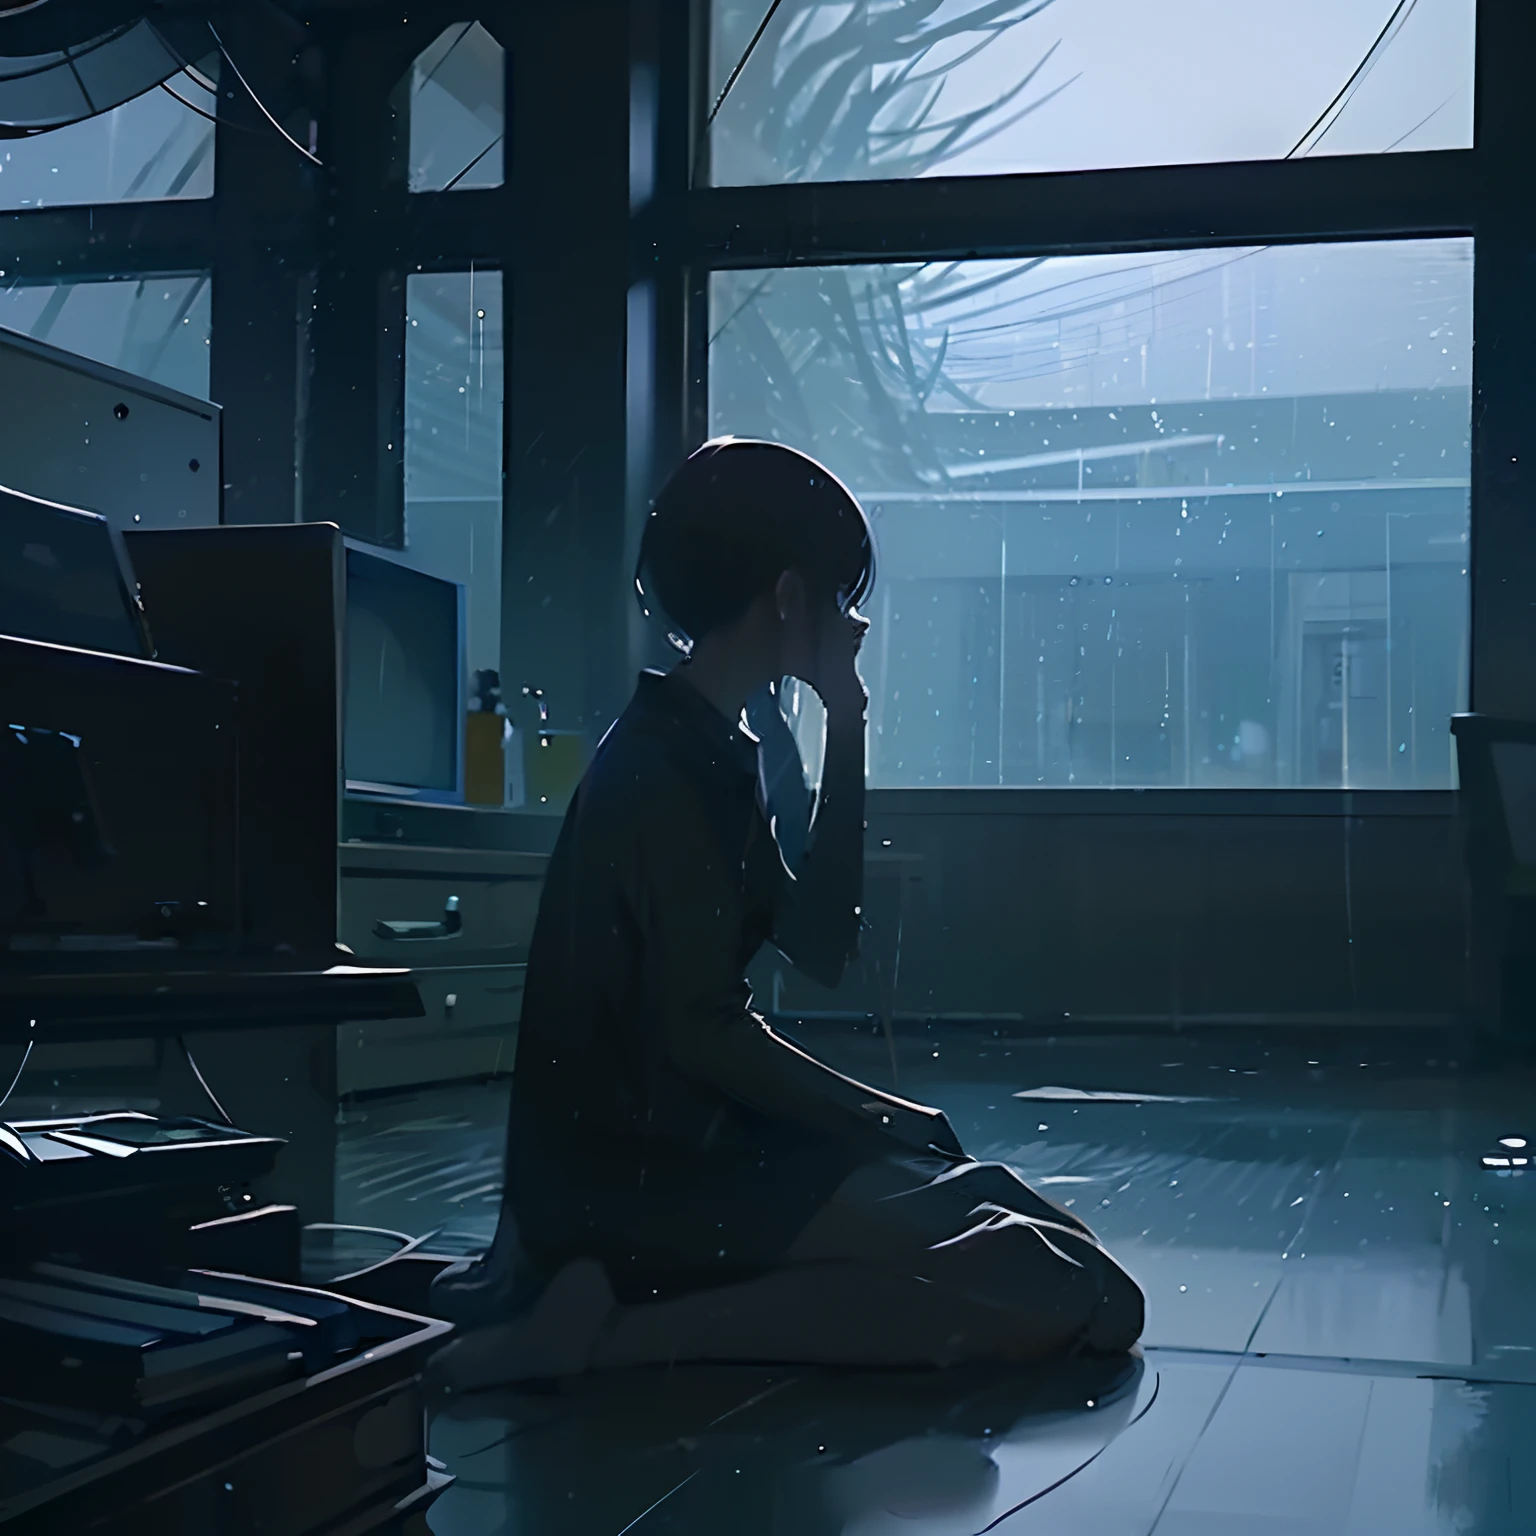 Interior oscuro,Mujer sin rostro,sentado frente a una computadora,artístico,lluvia fuera de la ventana,1 persona,largo